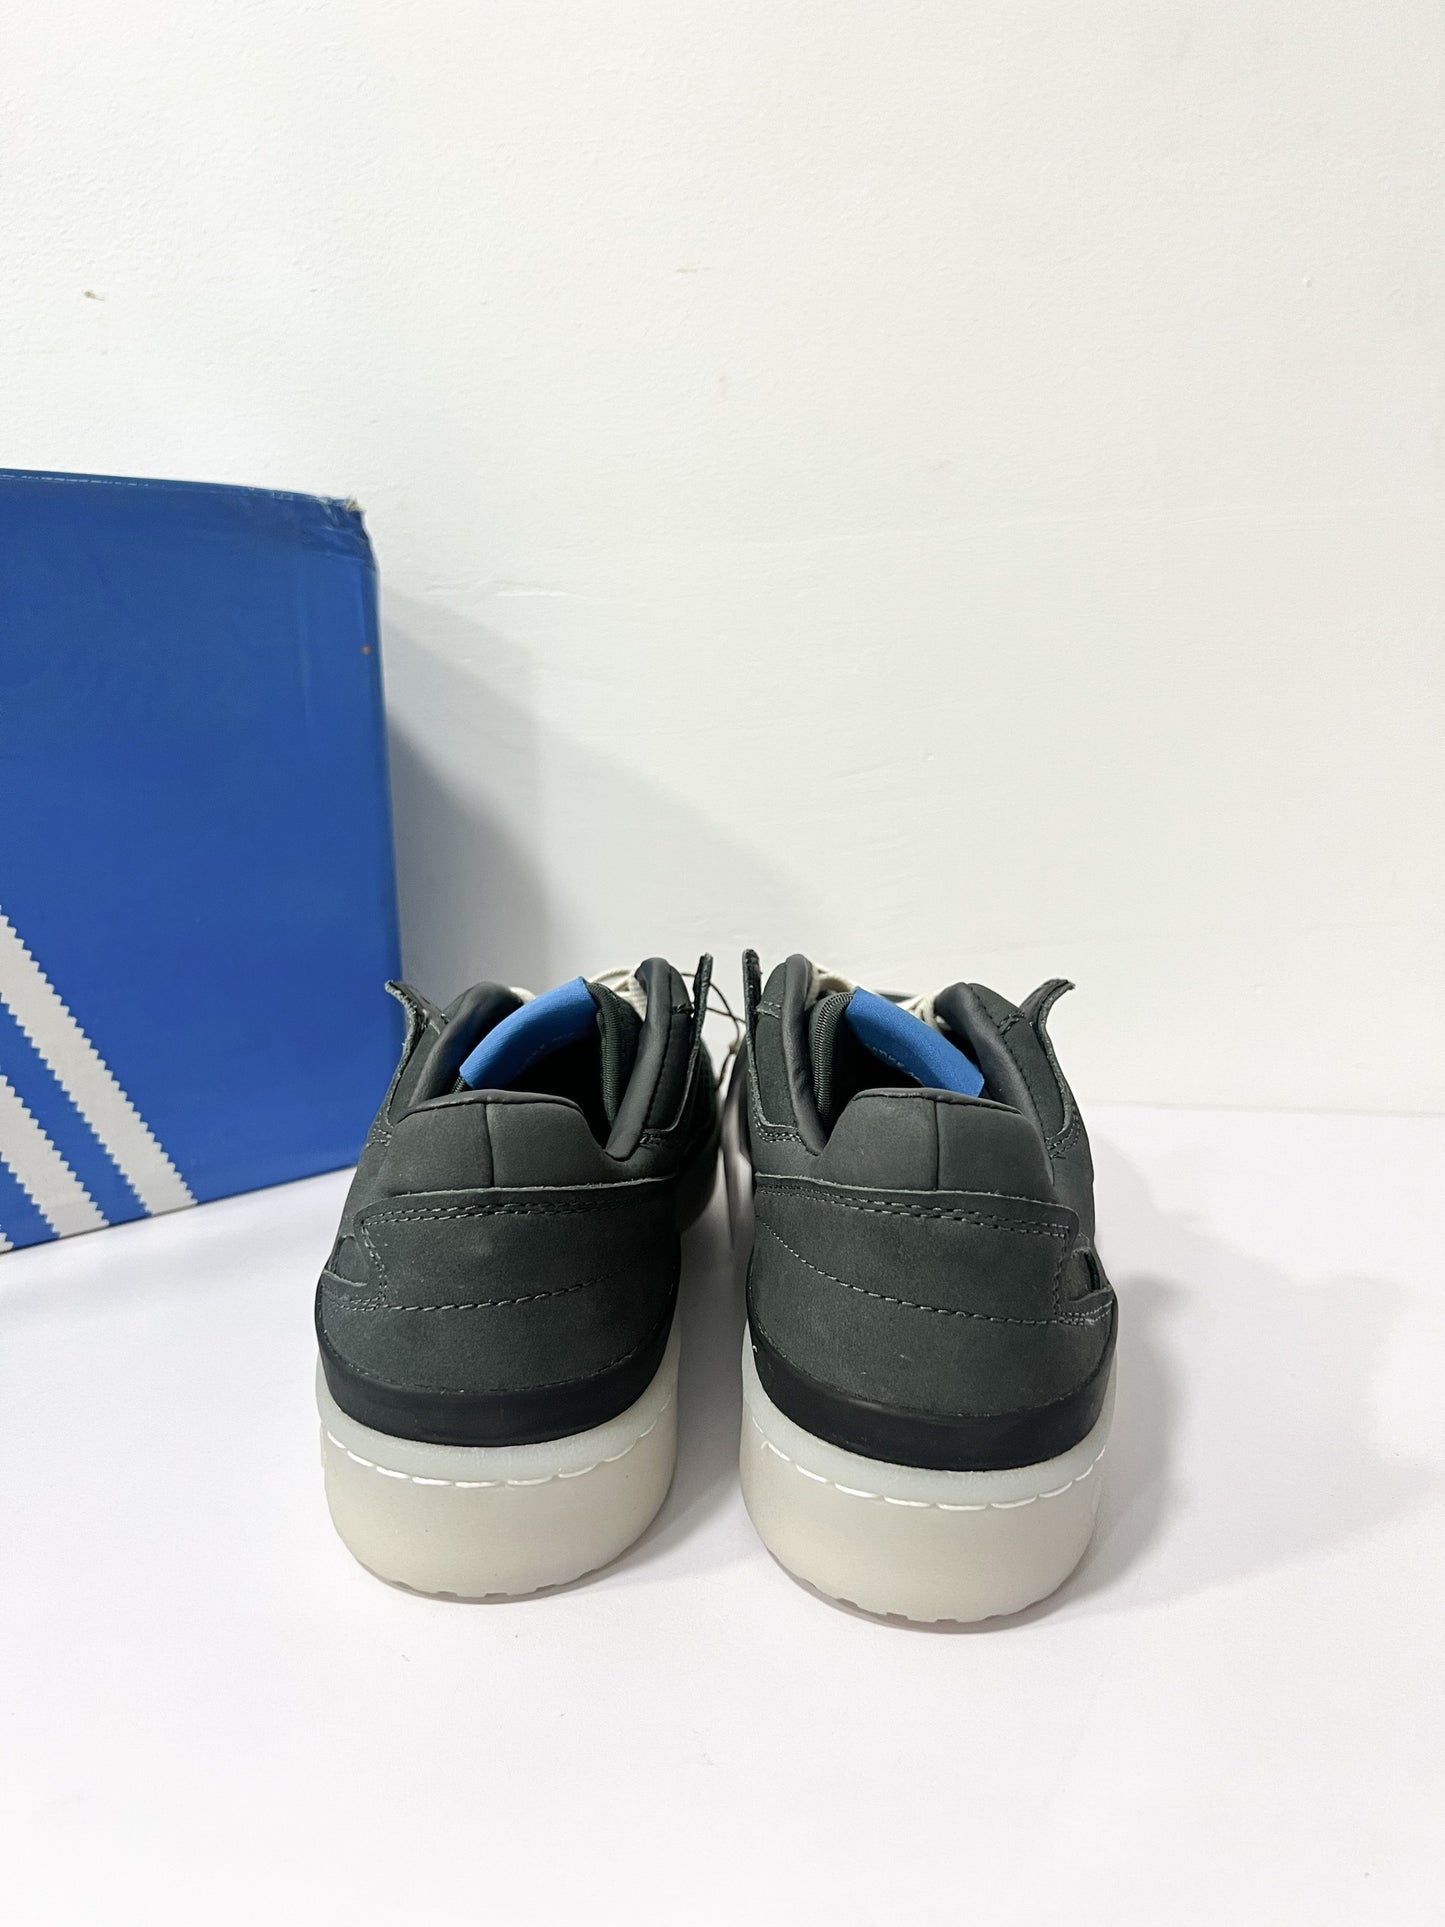 Giày nam Adidas Forum Low size 41 1/3